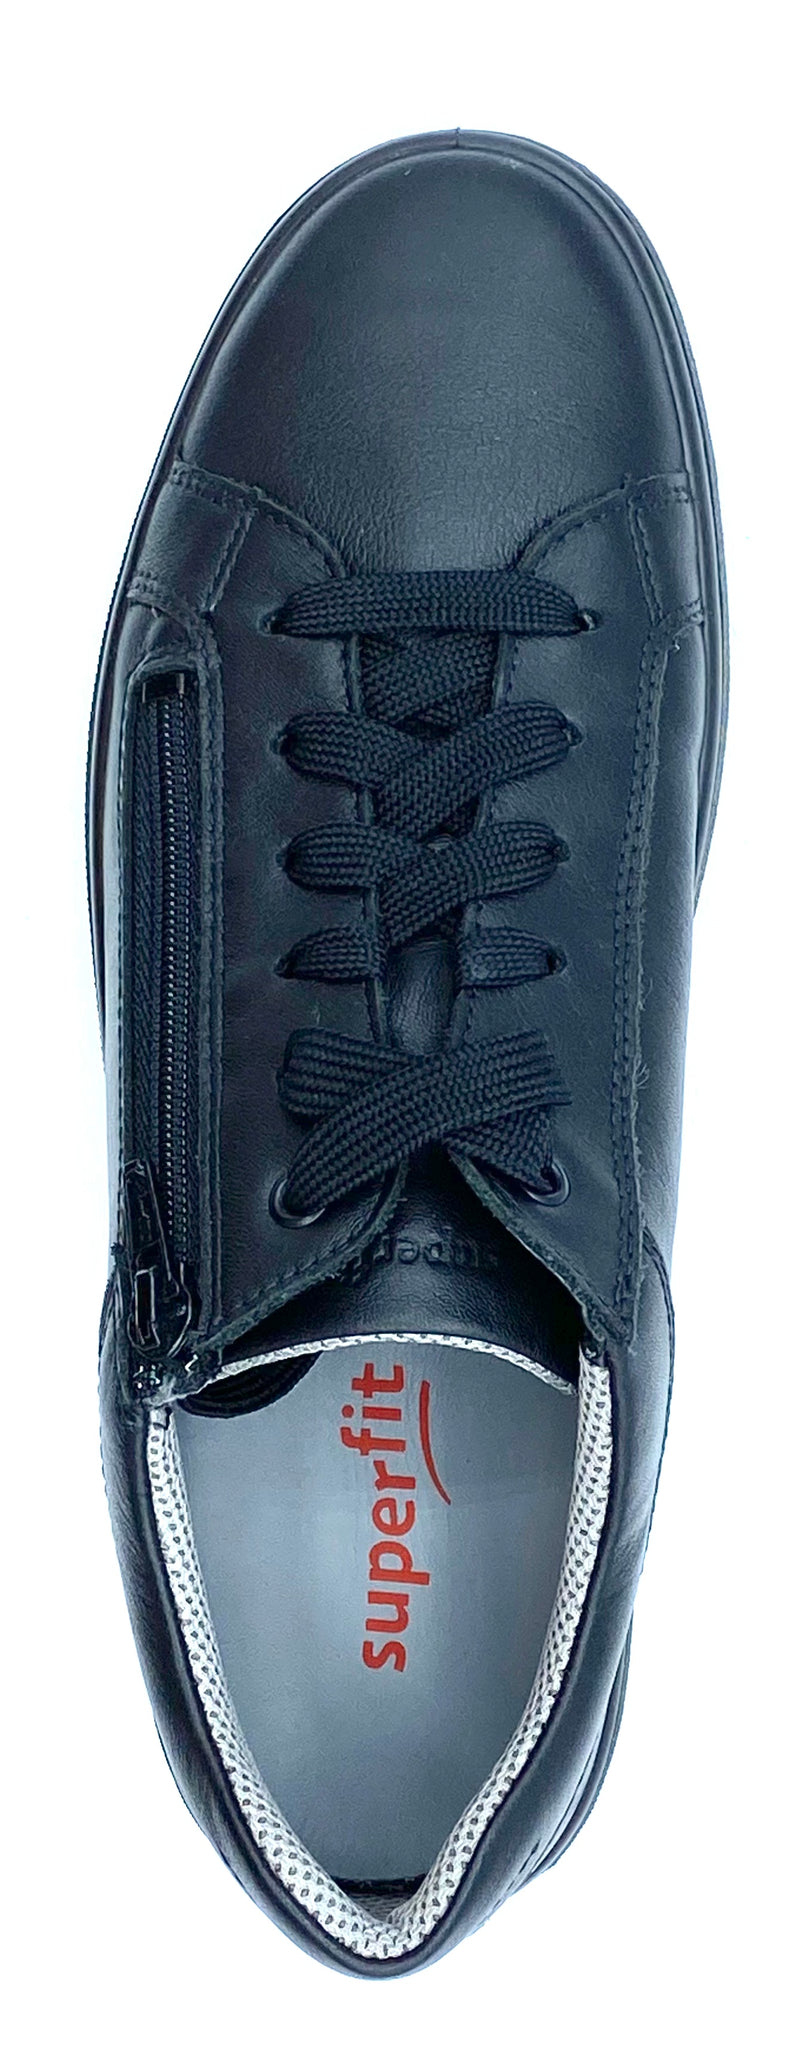 HEAVEN BLACK LACE TRAINER SHOE – Shoes